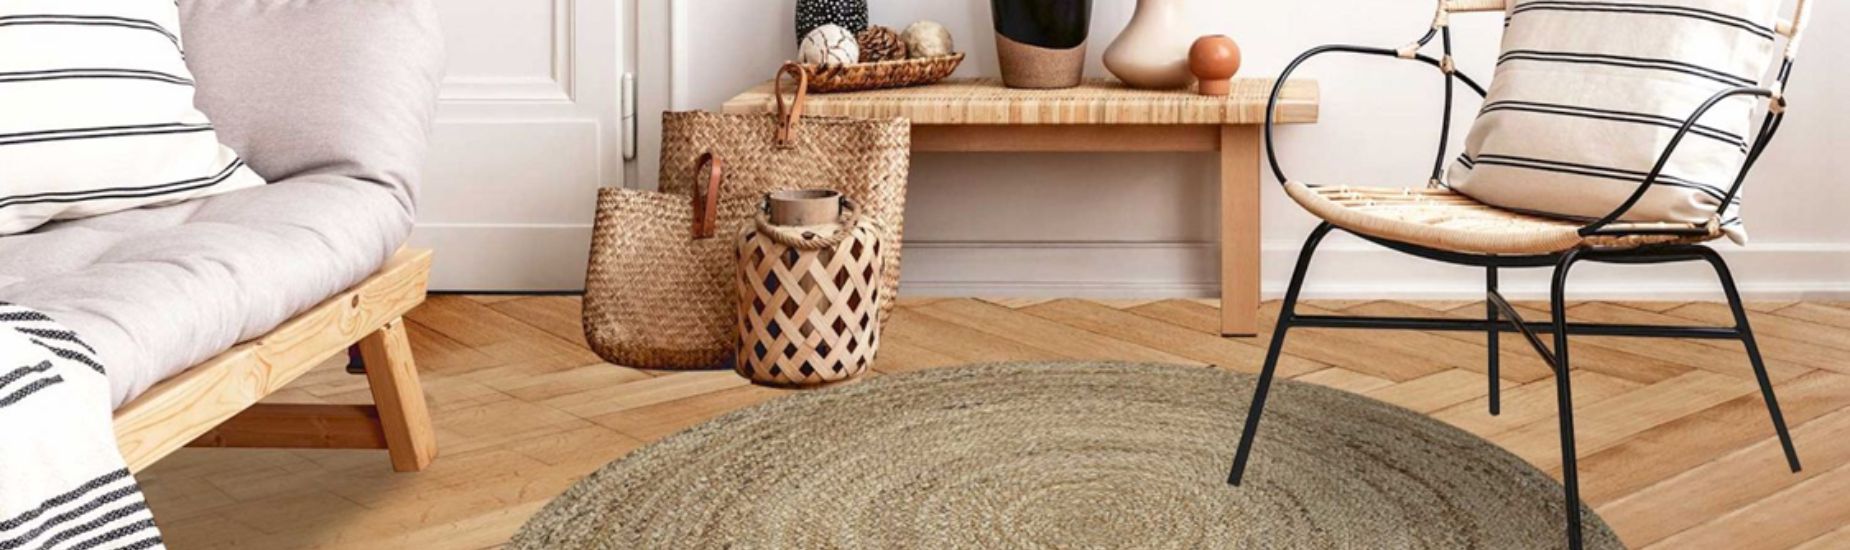 Un tapis pour habiller votre salon